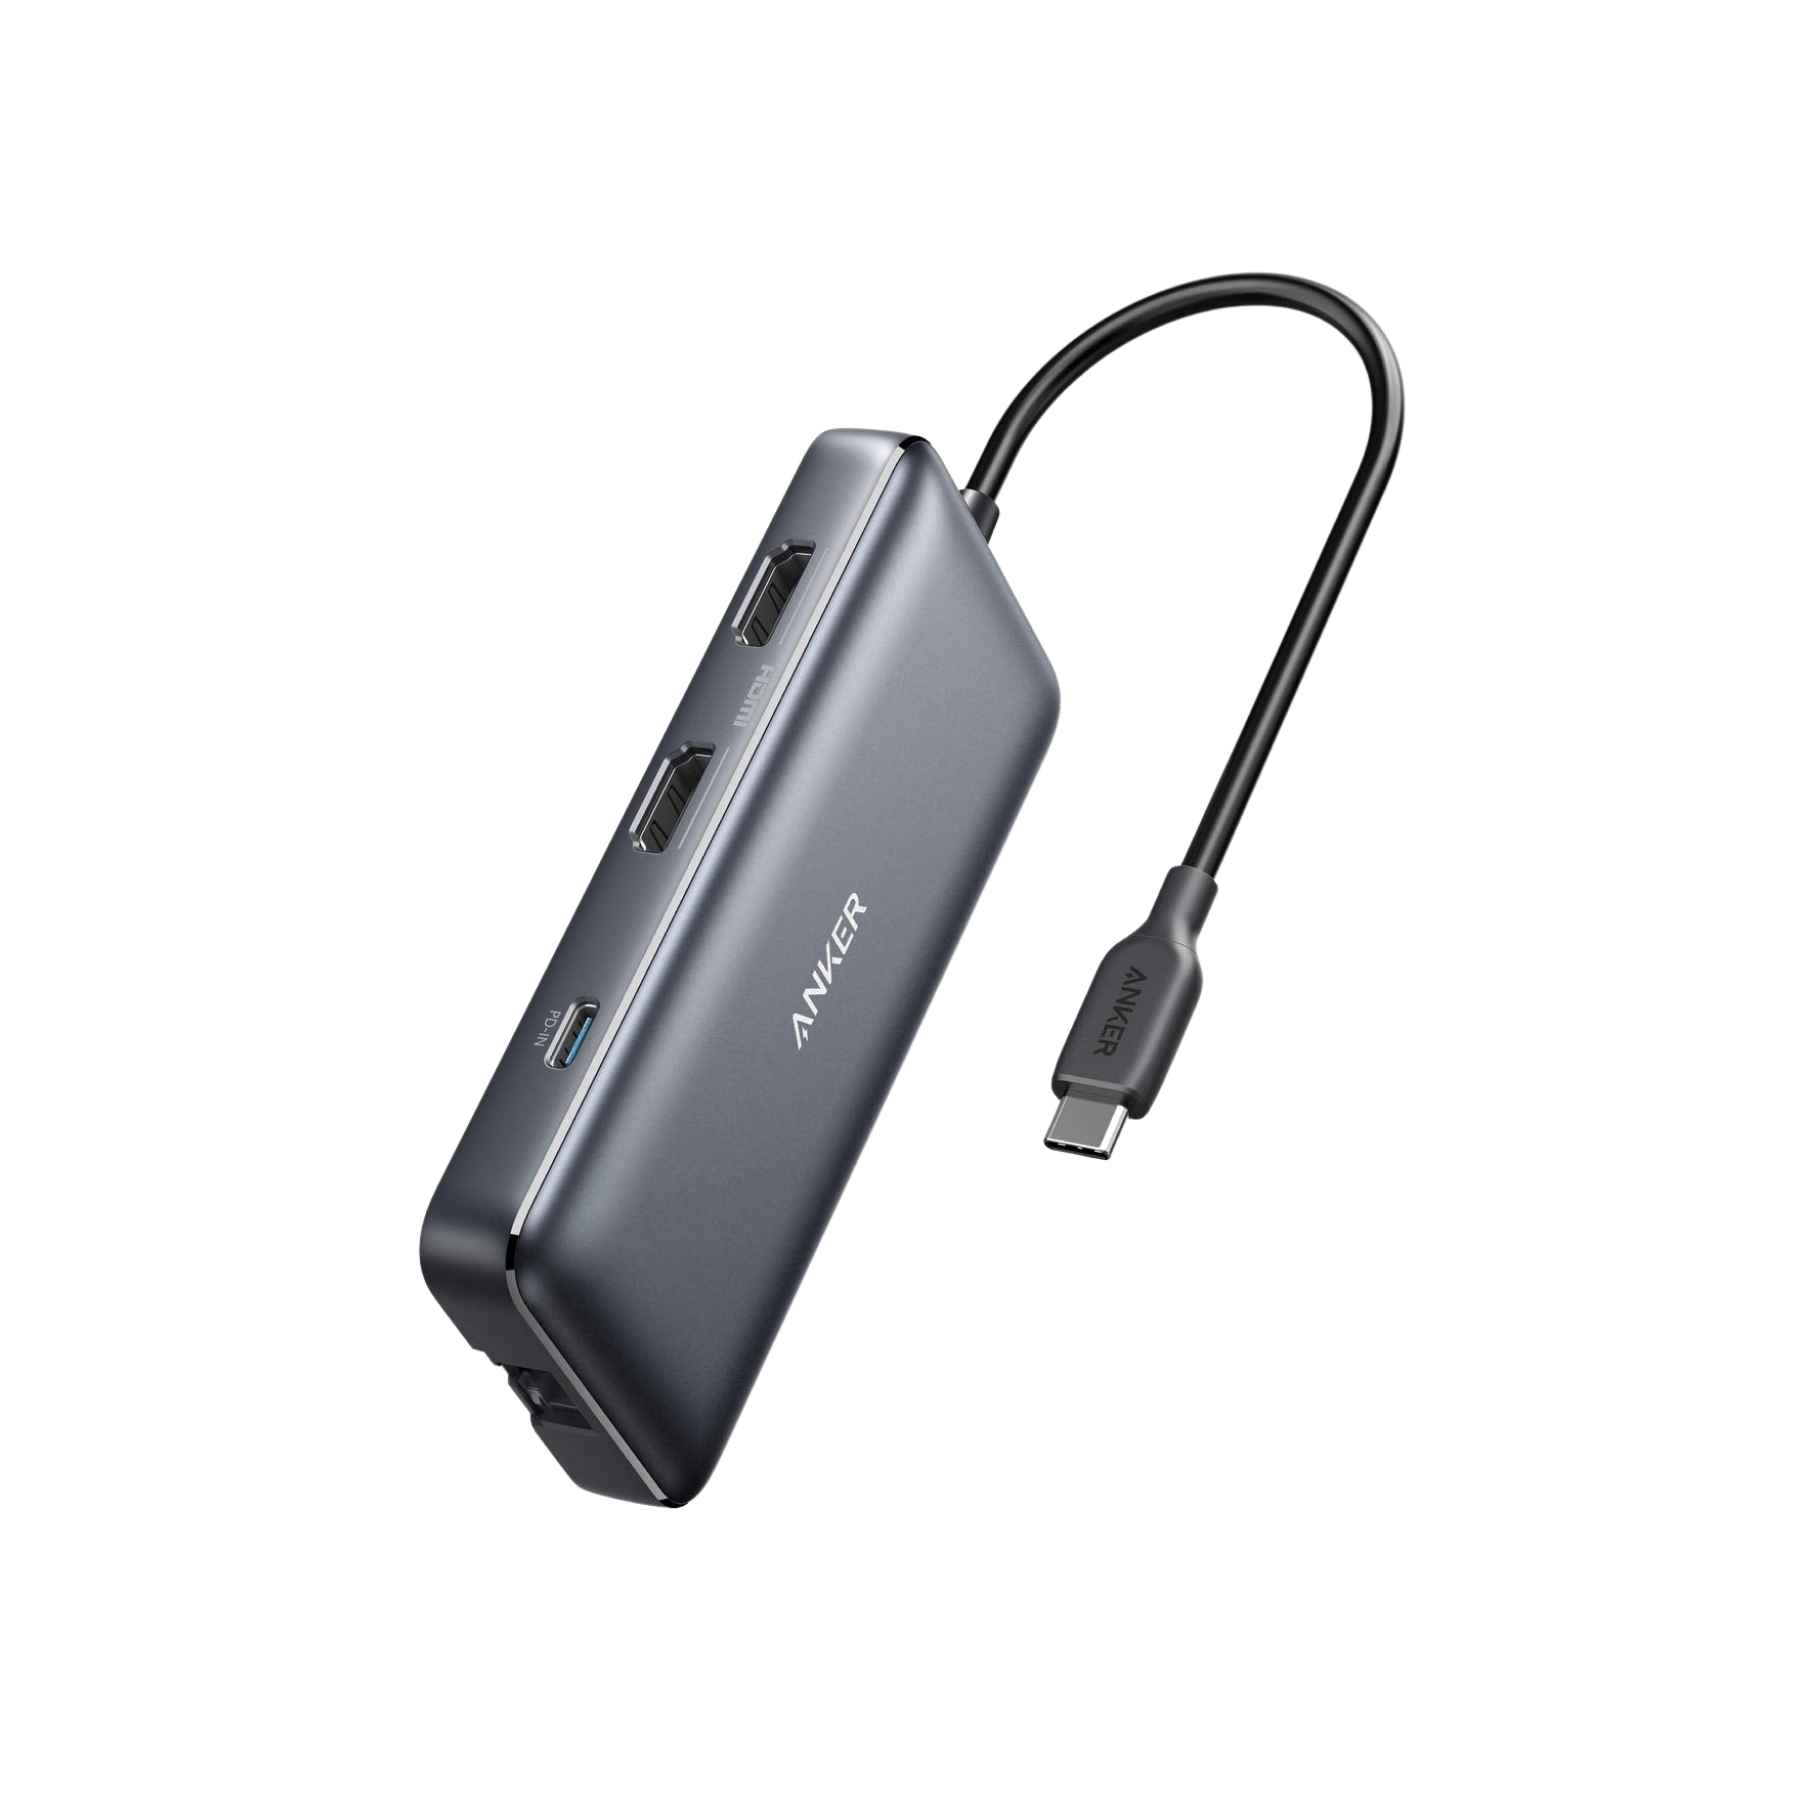 Anker 553 USB-C Hub (8-in-1) - Anker UK